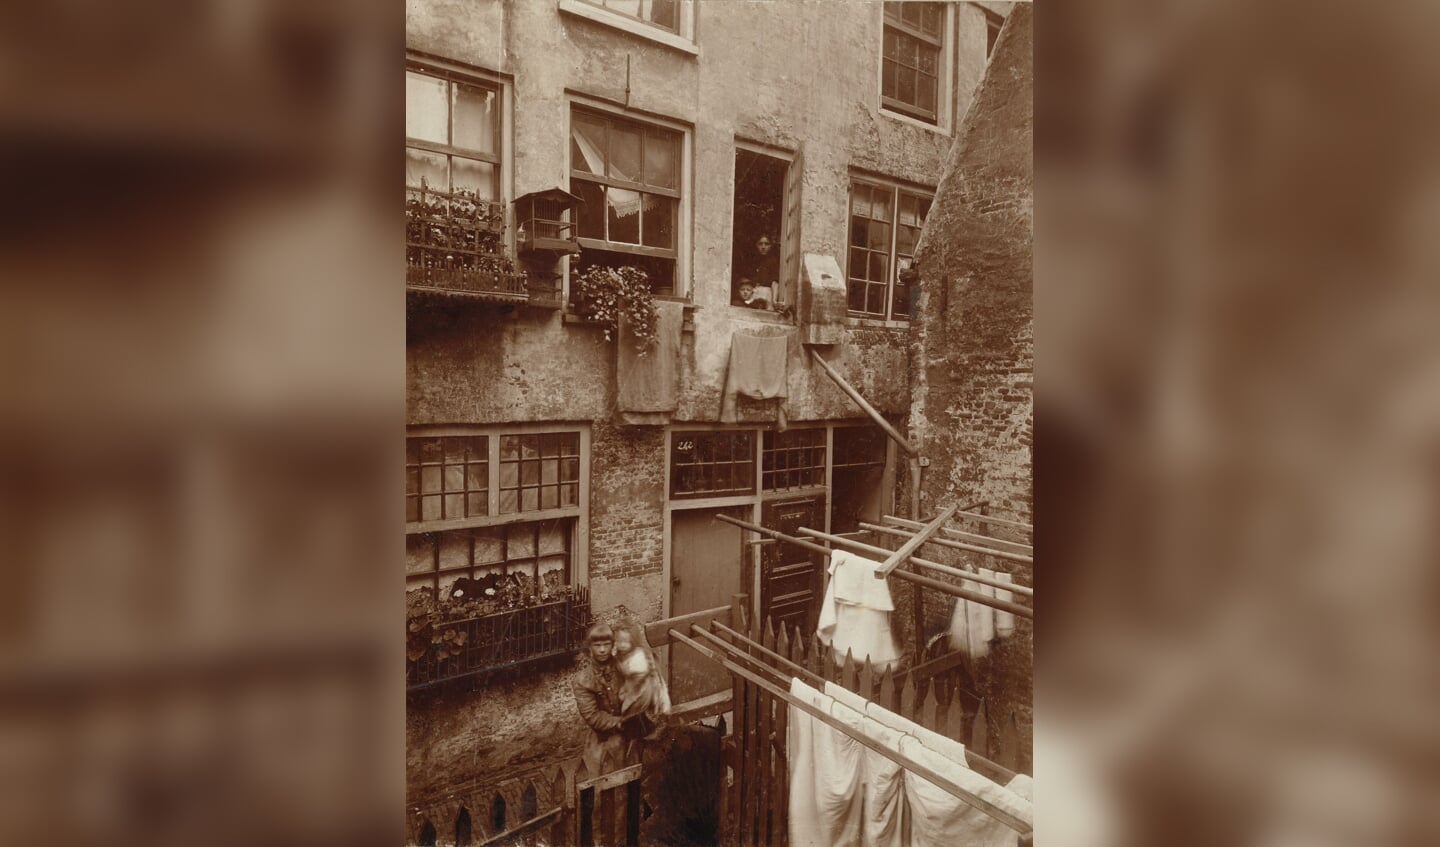 Arbeiderswoningen in de Suikerbakkersgang in de Jordaan in Amsterdam in 1895.